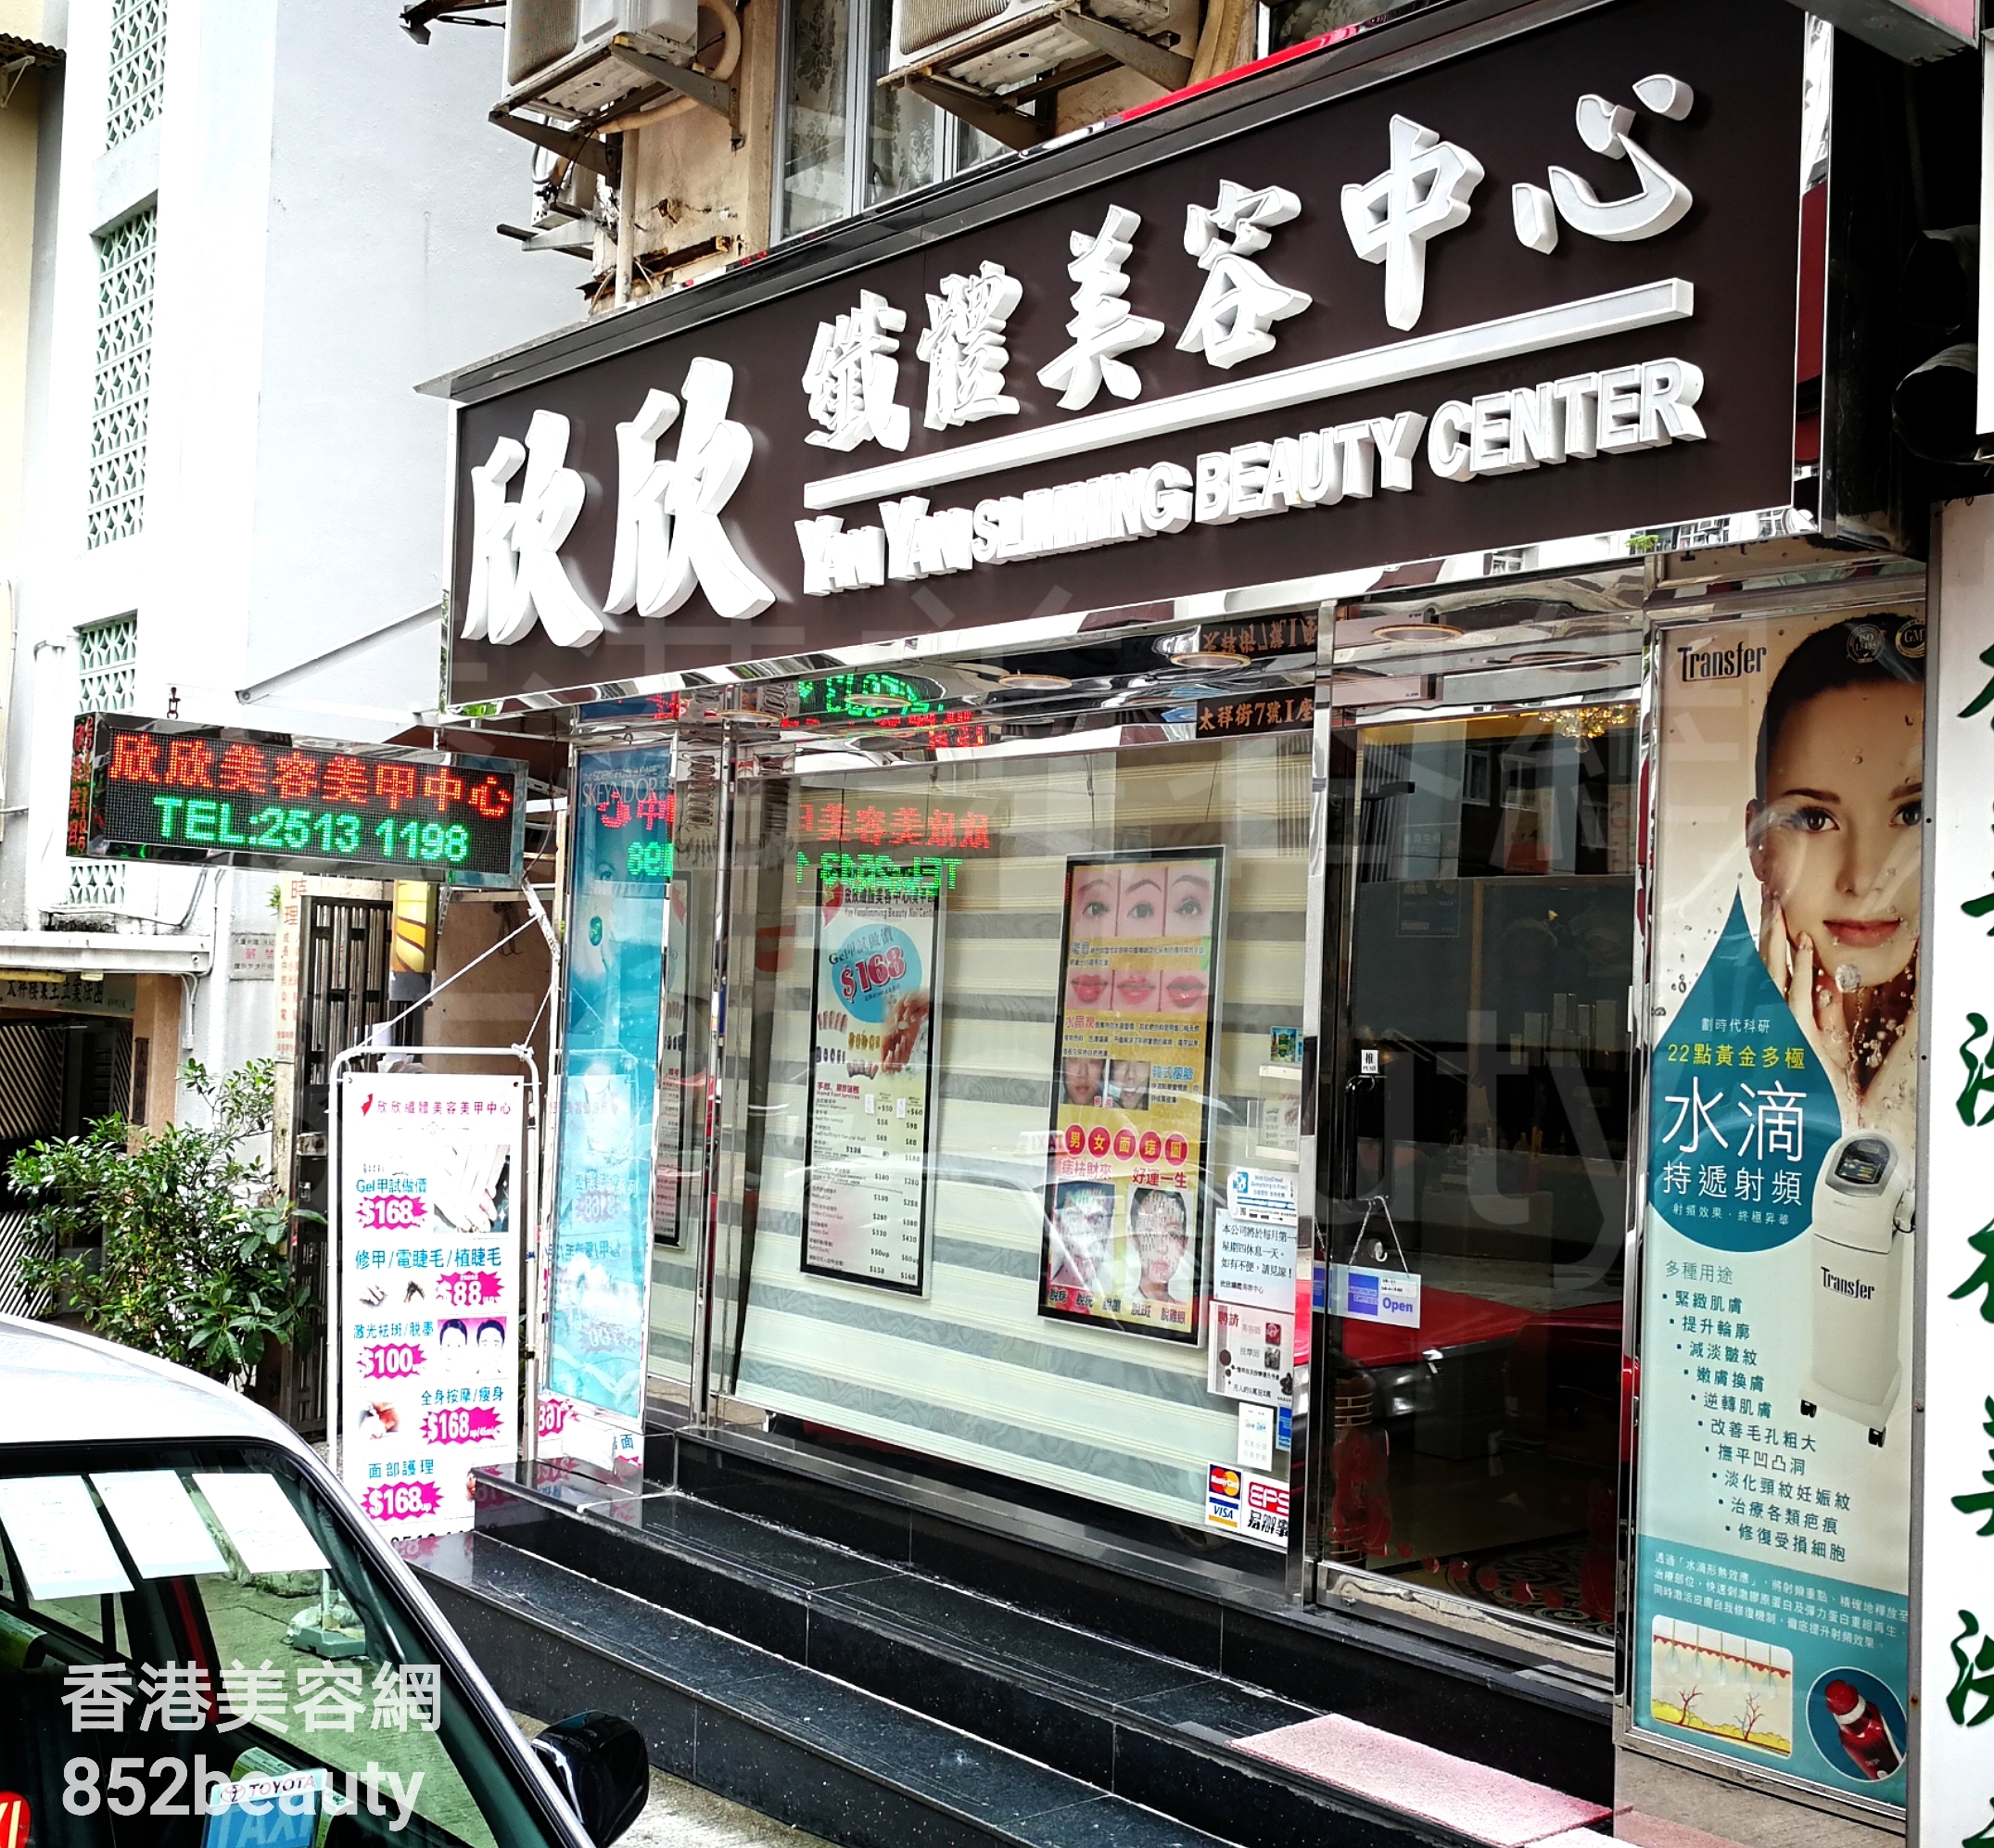 香港美容網 Hong Kong Beauty Salon 美容院 / 美容師: 欣欣纖體美容美甲中心